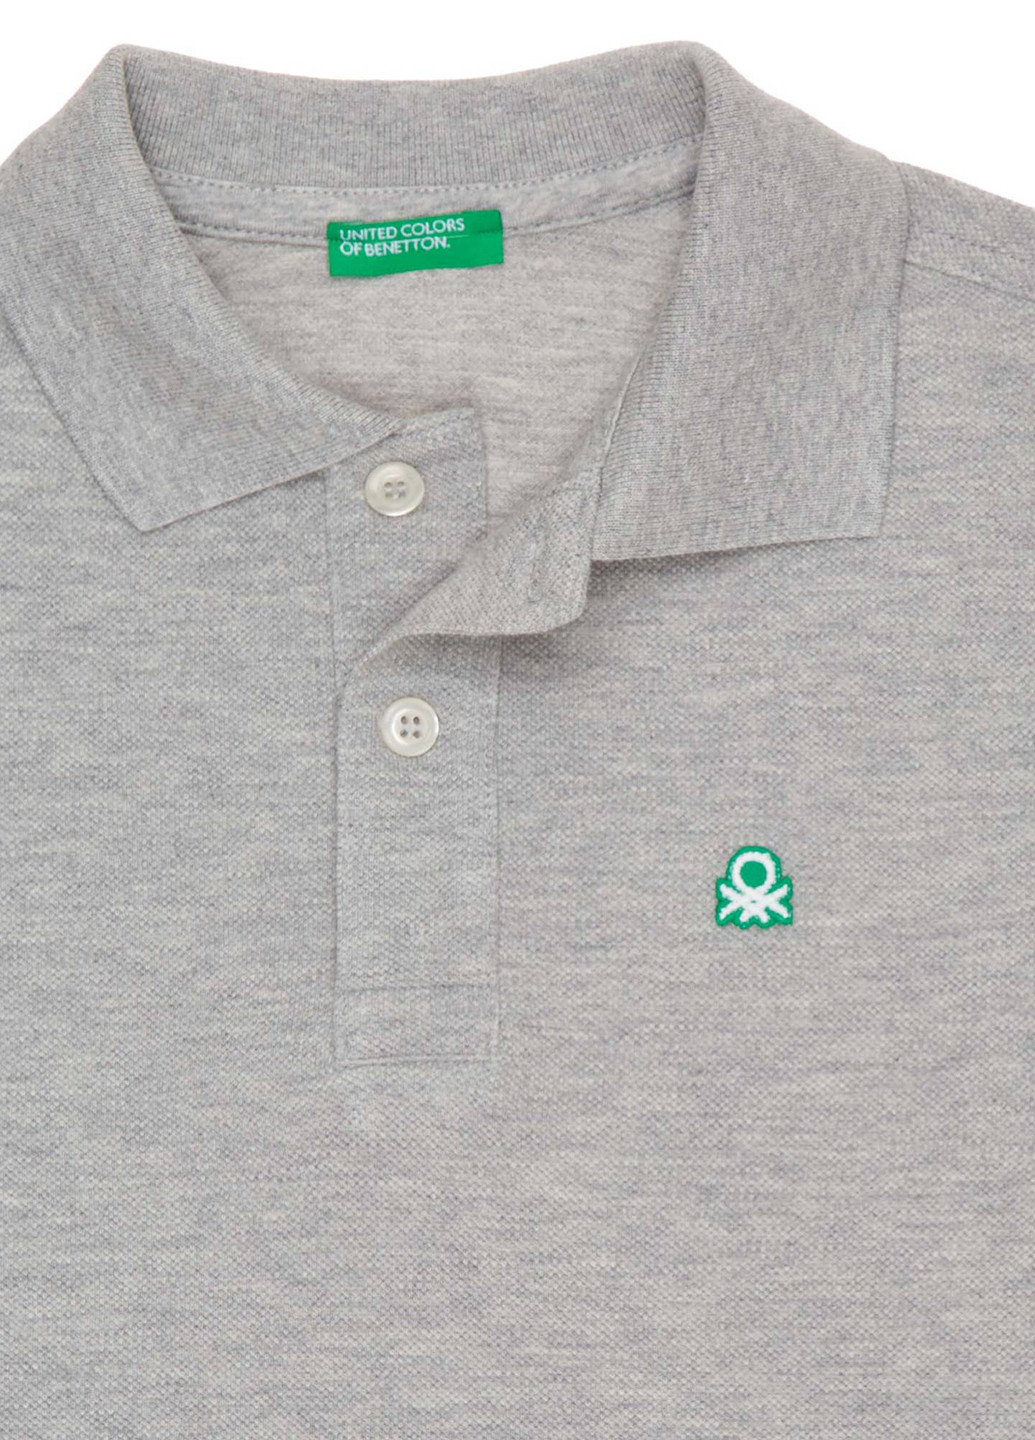 Серая детская футболка-поло для мальчика United Colors of Benetton с логотипом